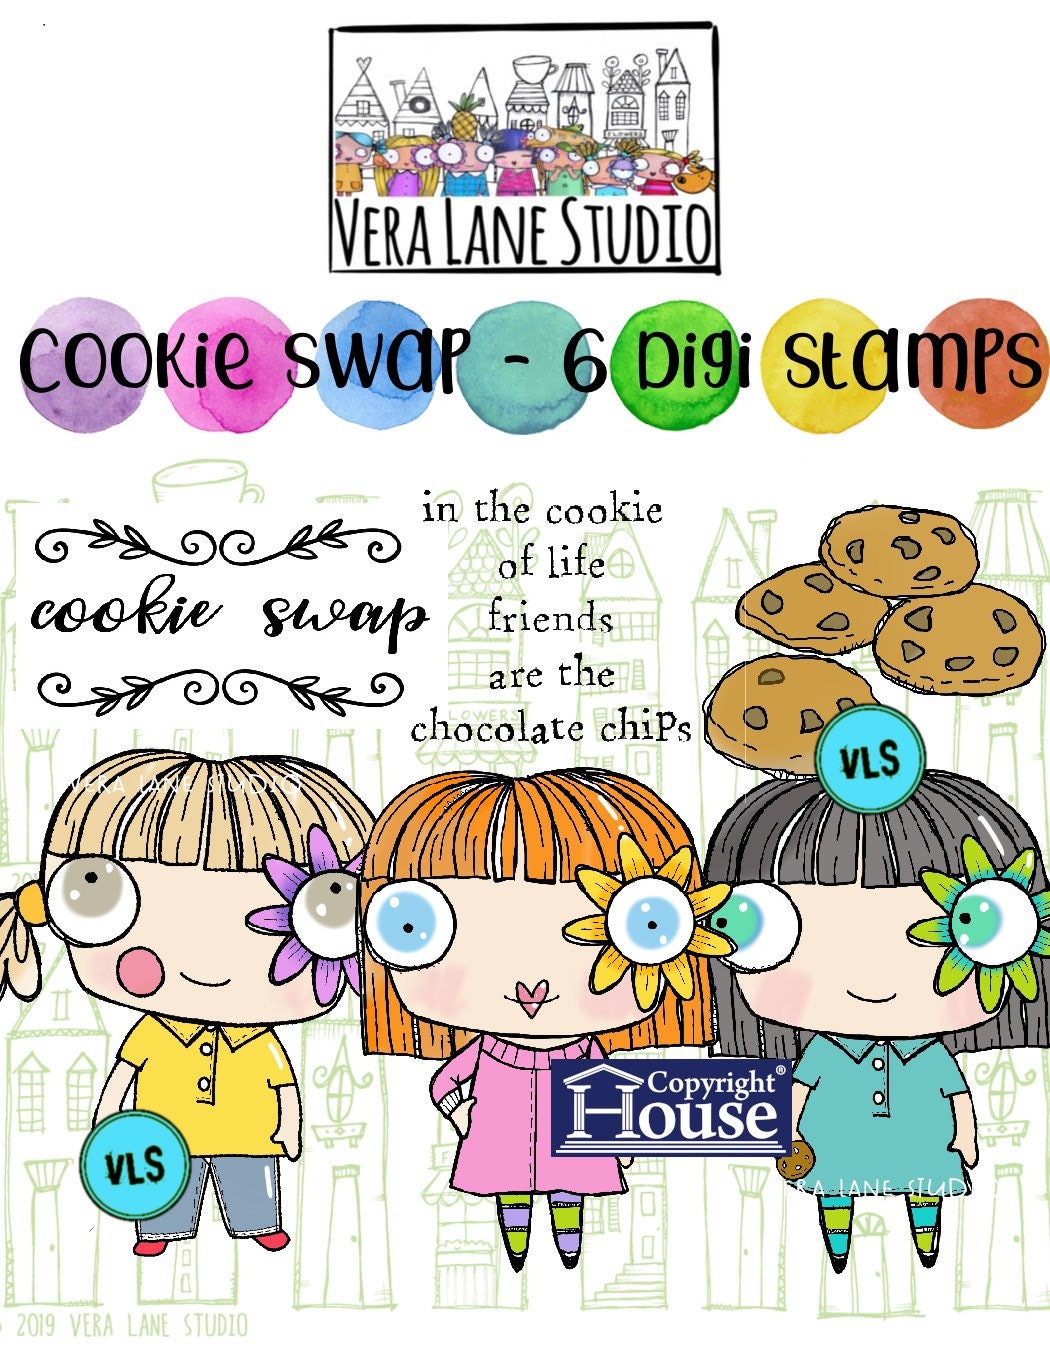 CookieSwap - 6 digi stamps